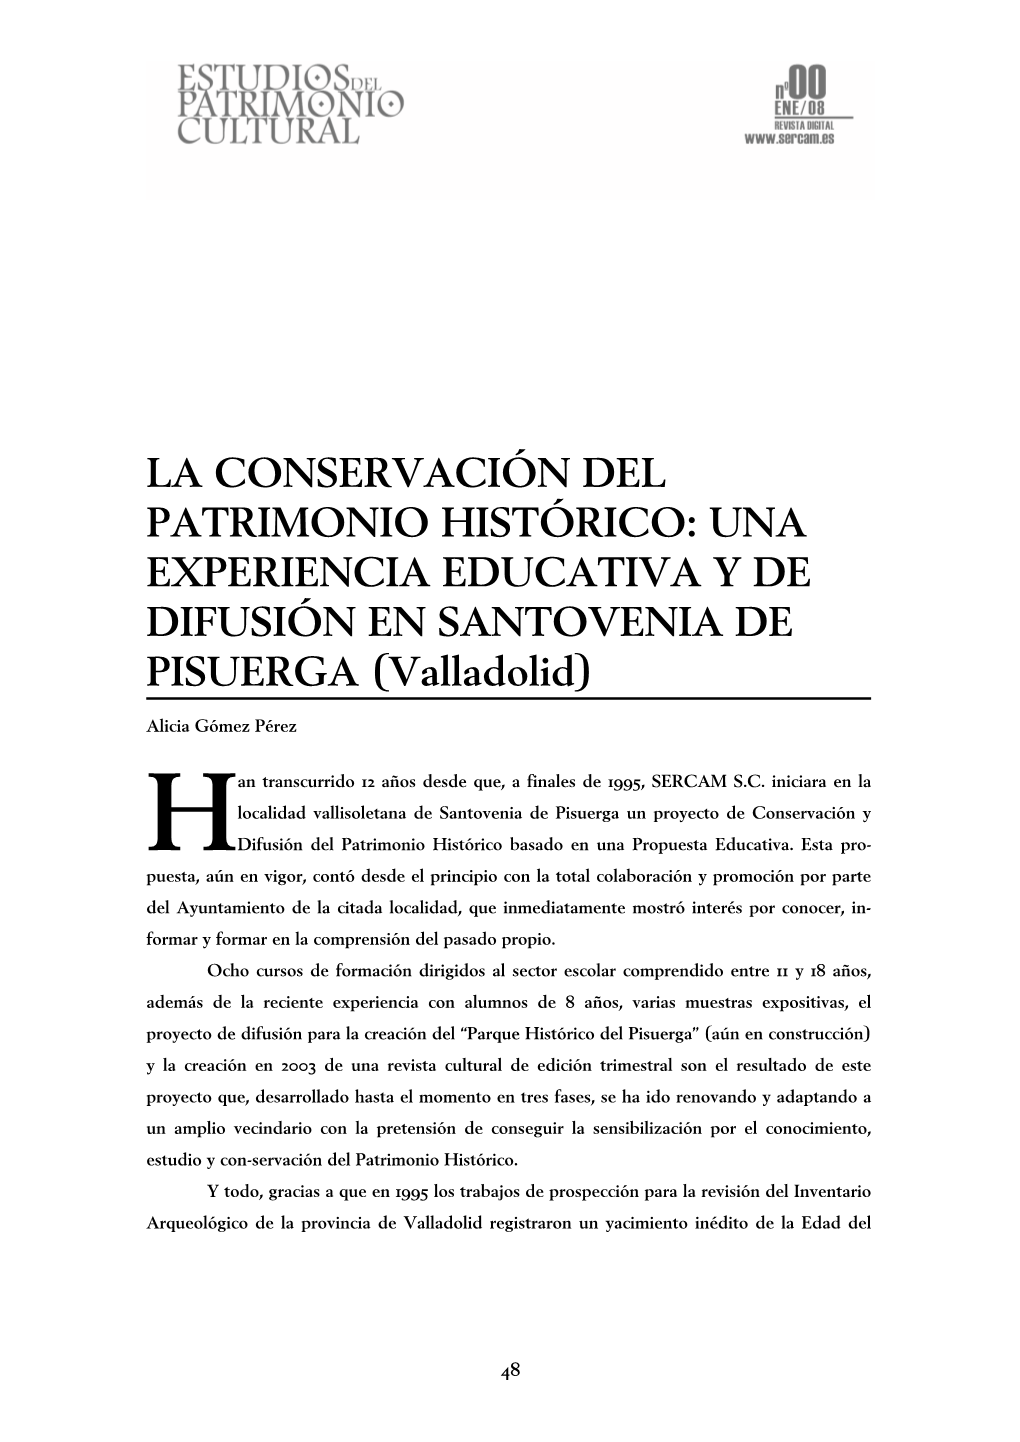 LA CONSERVACIÓN DEL PATRIMONIO HISTÓRICO: UNA EXPERIENCIA EDUCATIVA Y DE DIFUSIÓN EN SANTOVENIA DE PISUERGA (Valladolid)